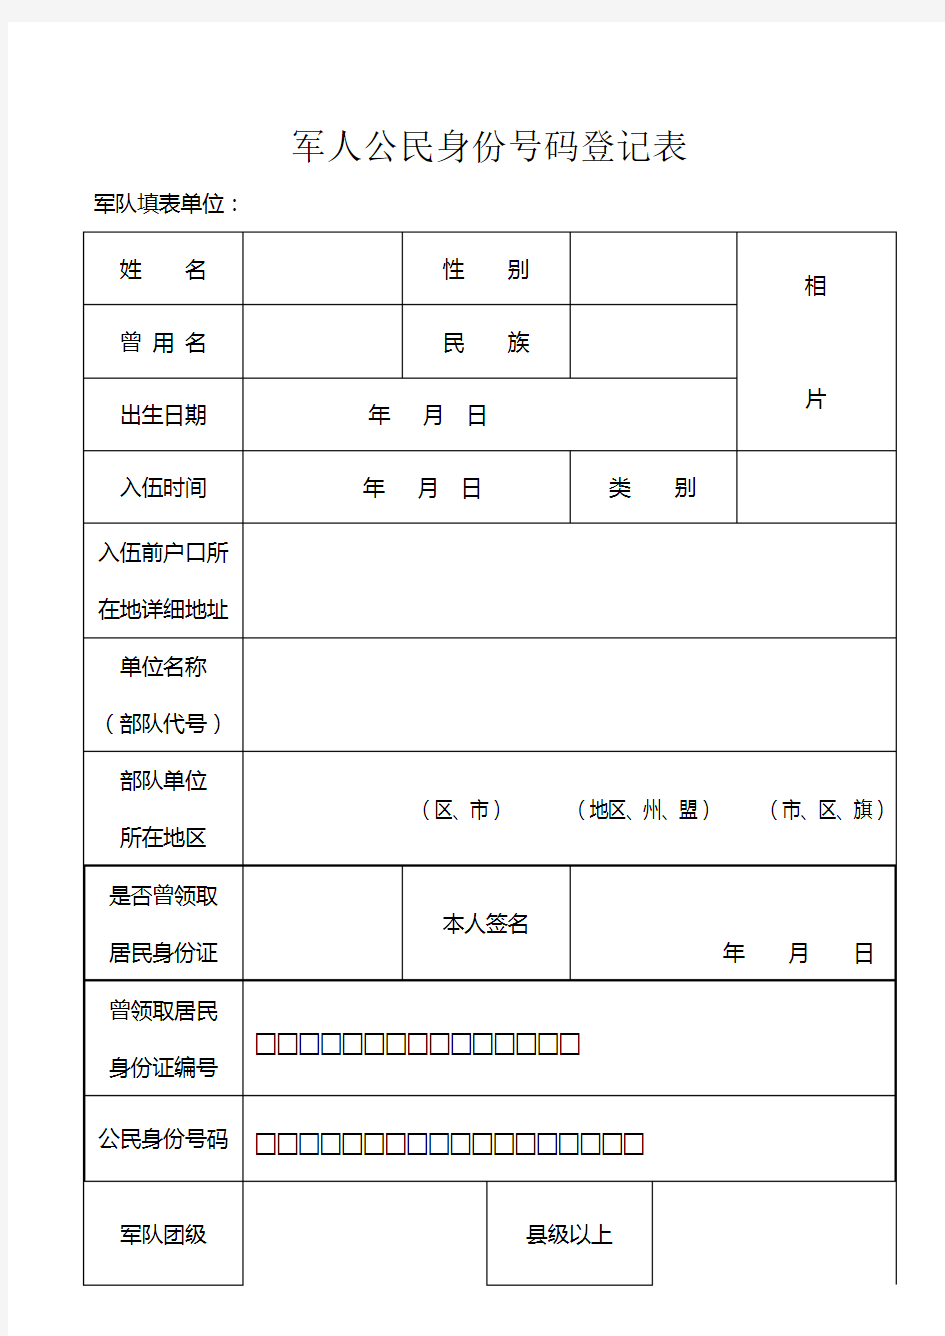 军人公民身份证号码登记表